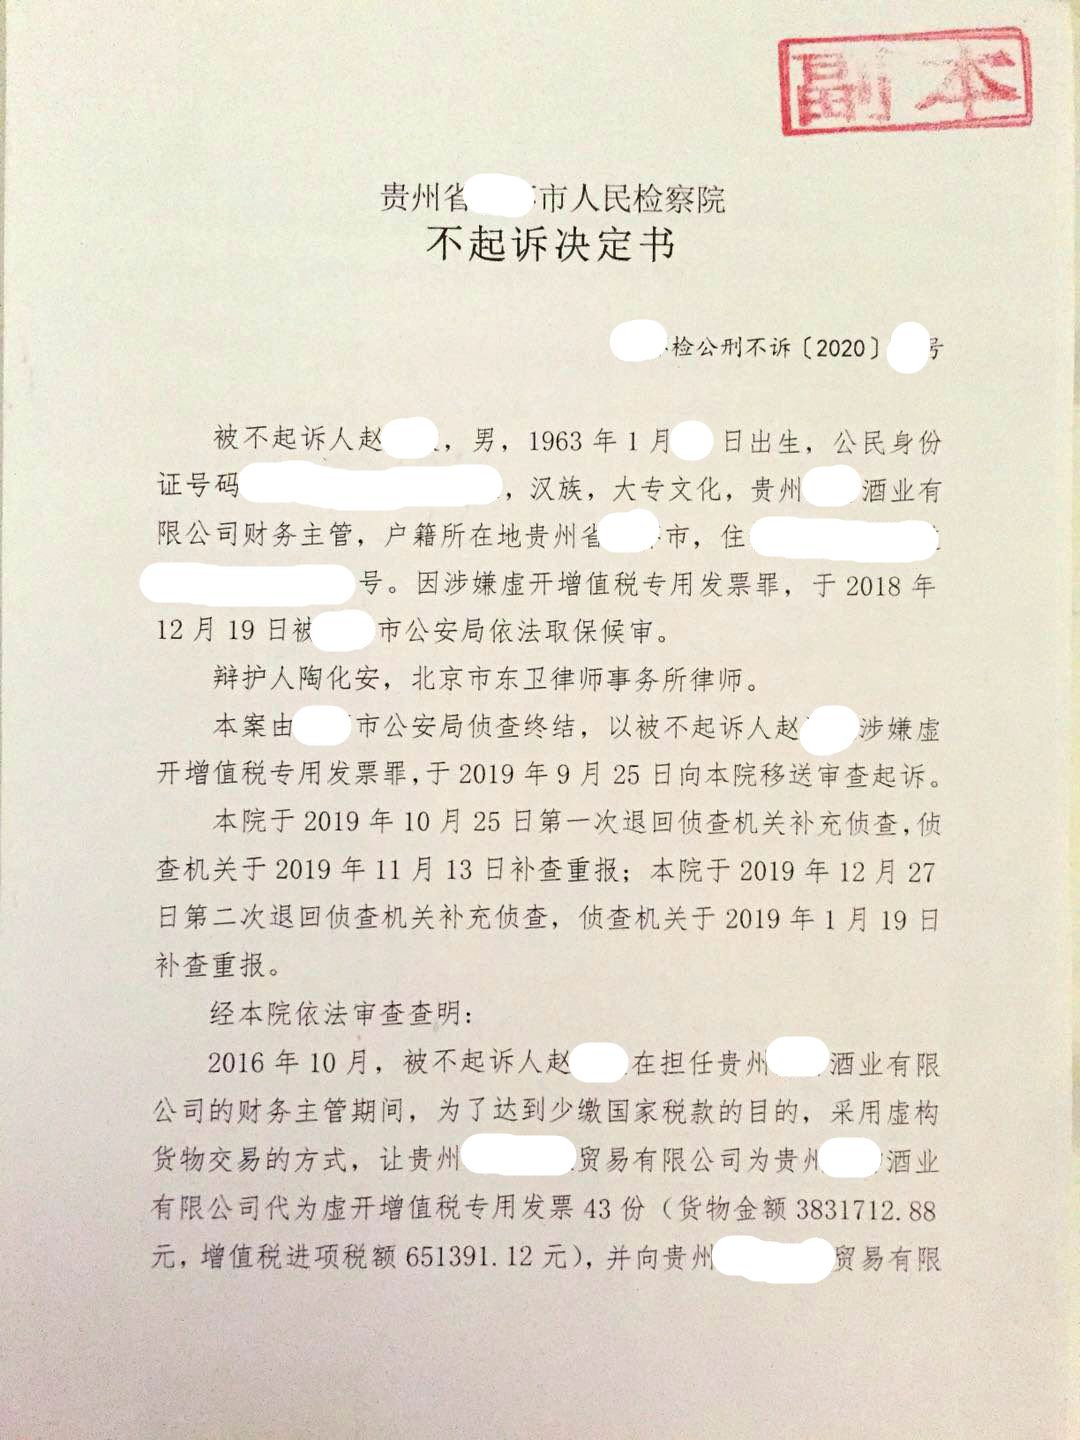 陶化安律师为赵某某虚开增值税专用发票案辩护获得不起诉决定